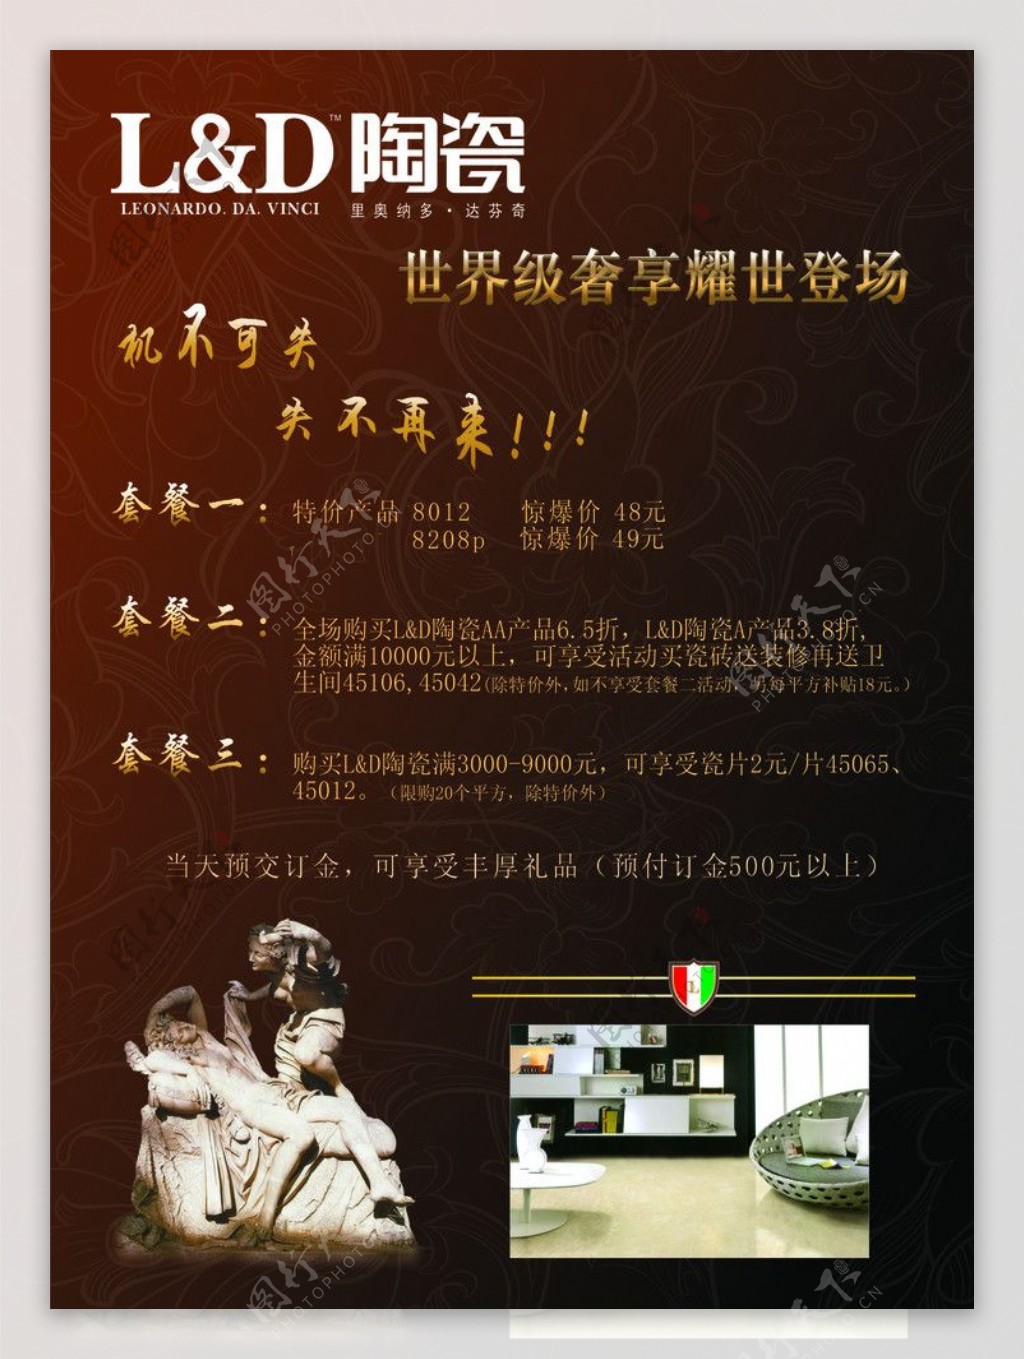 LD陶瓷单页图片